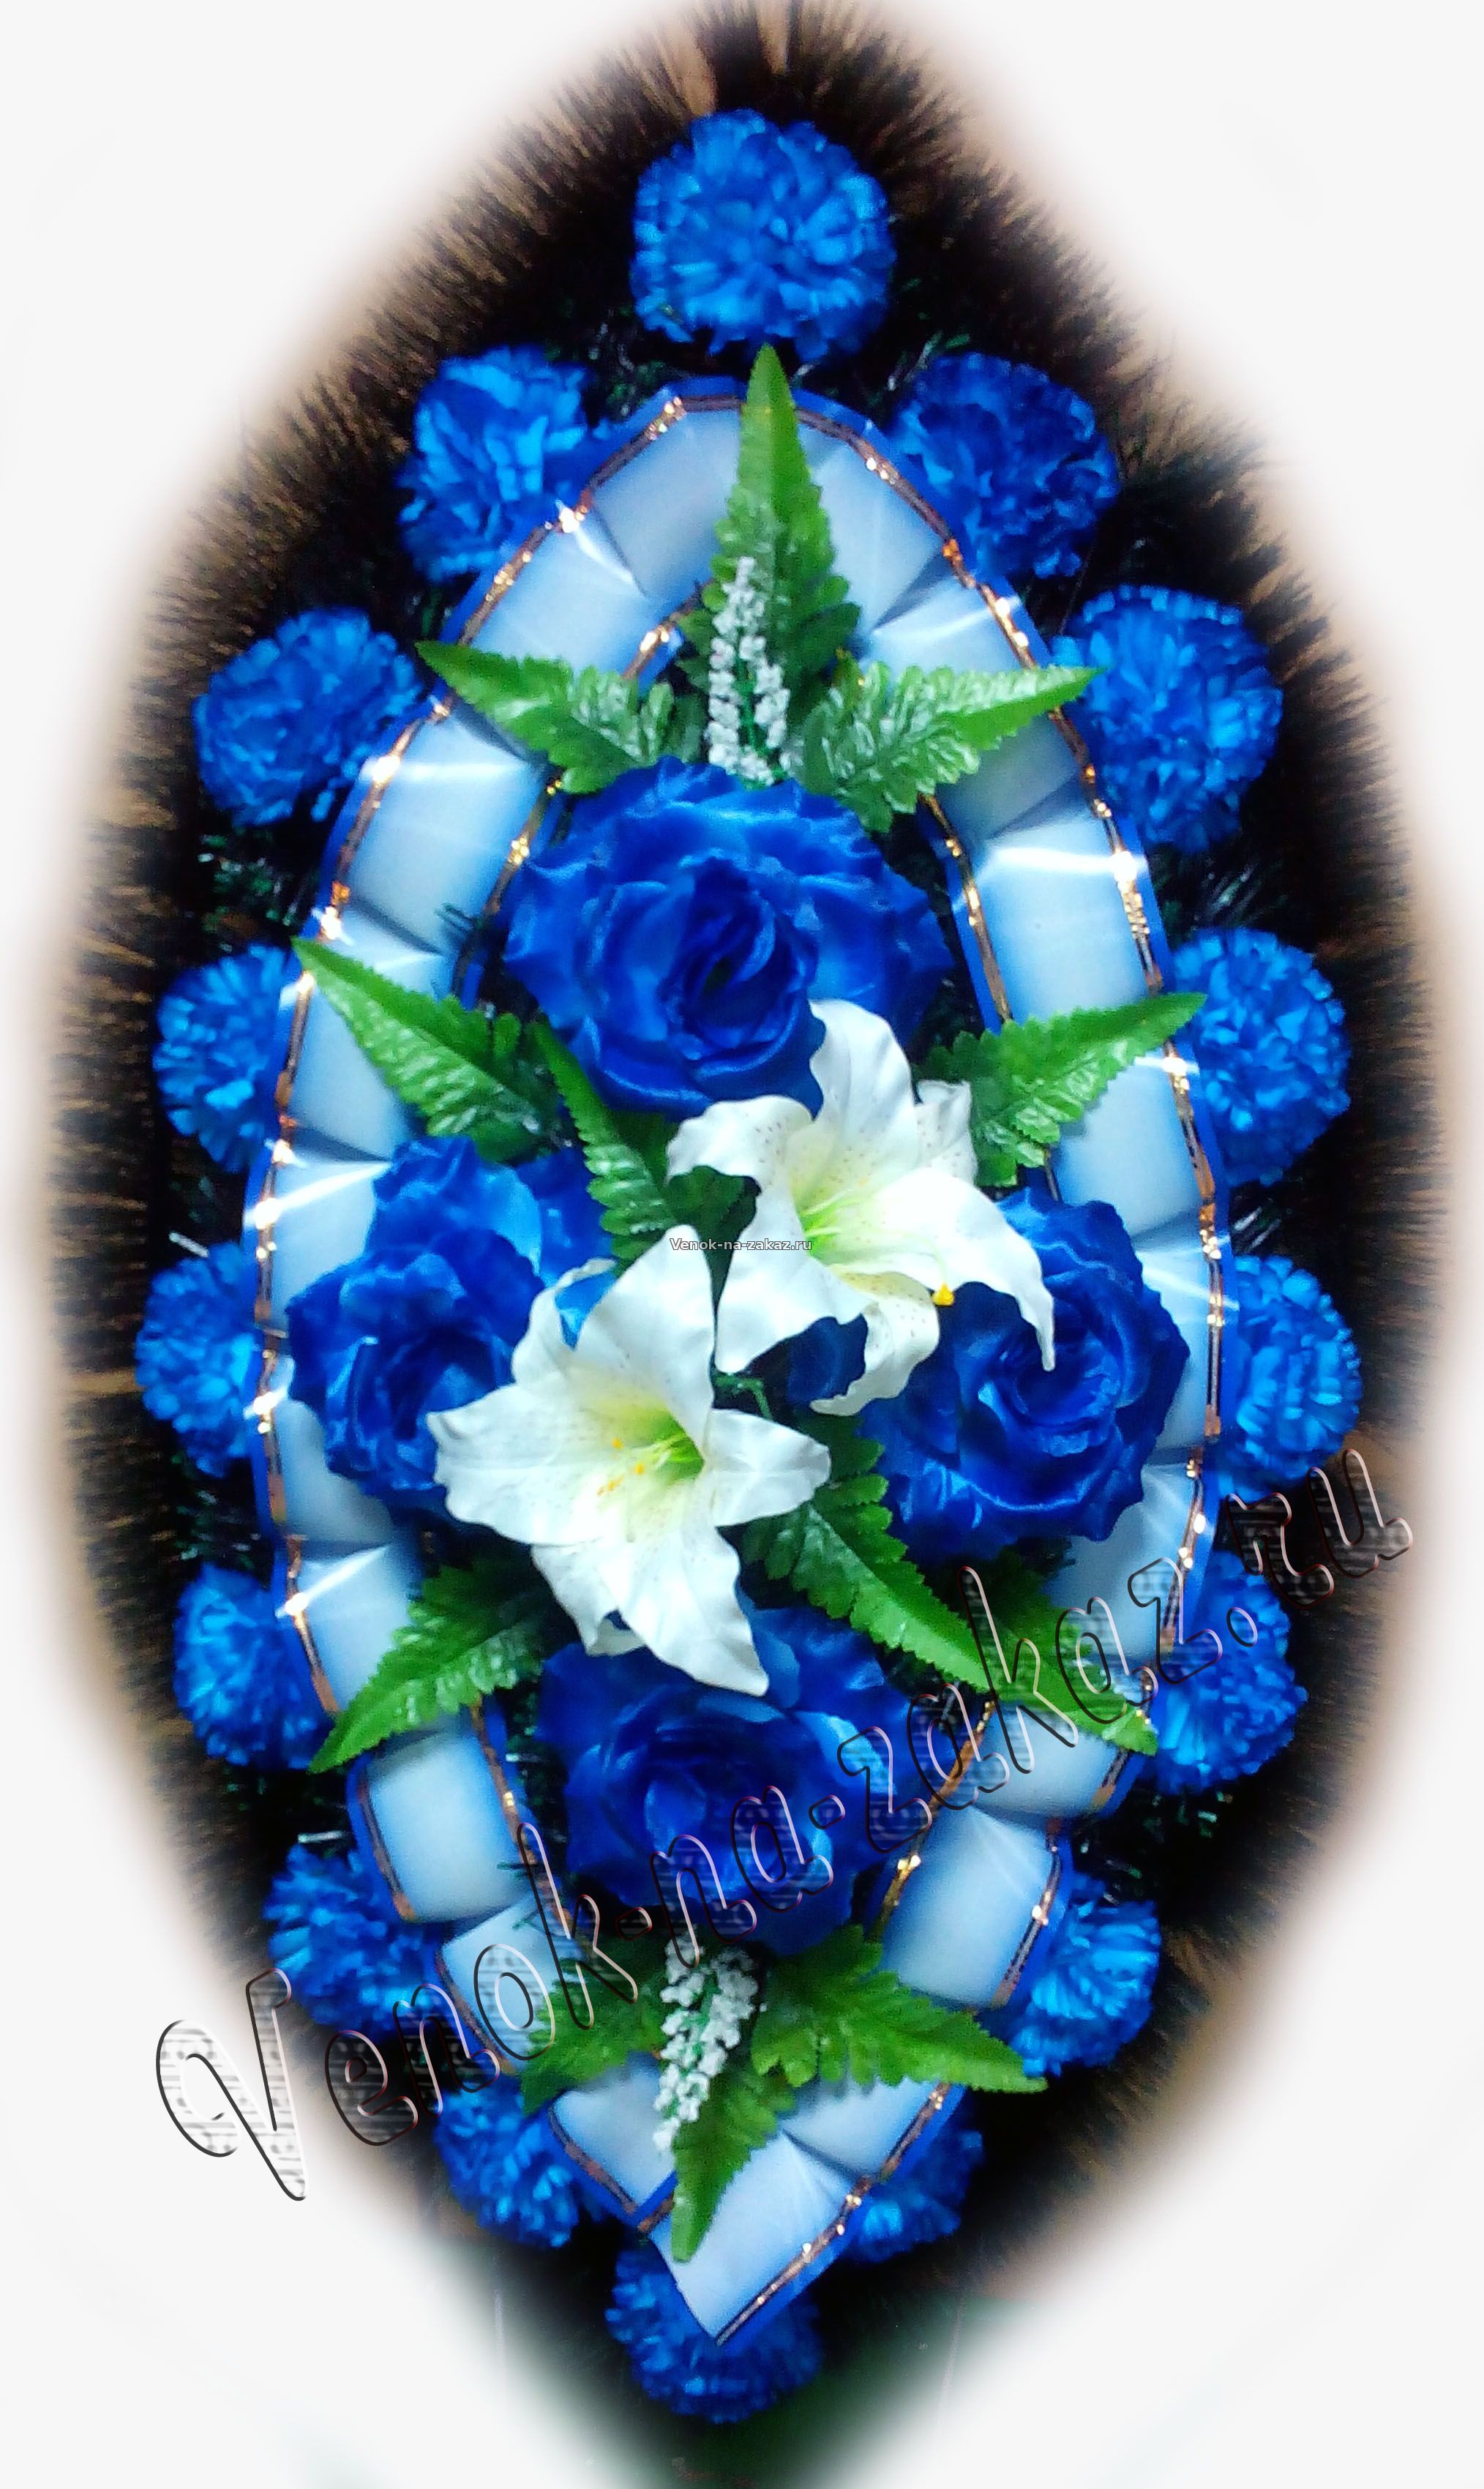 Недорогой ритуальный венок 90 см синий с белыми калами